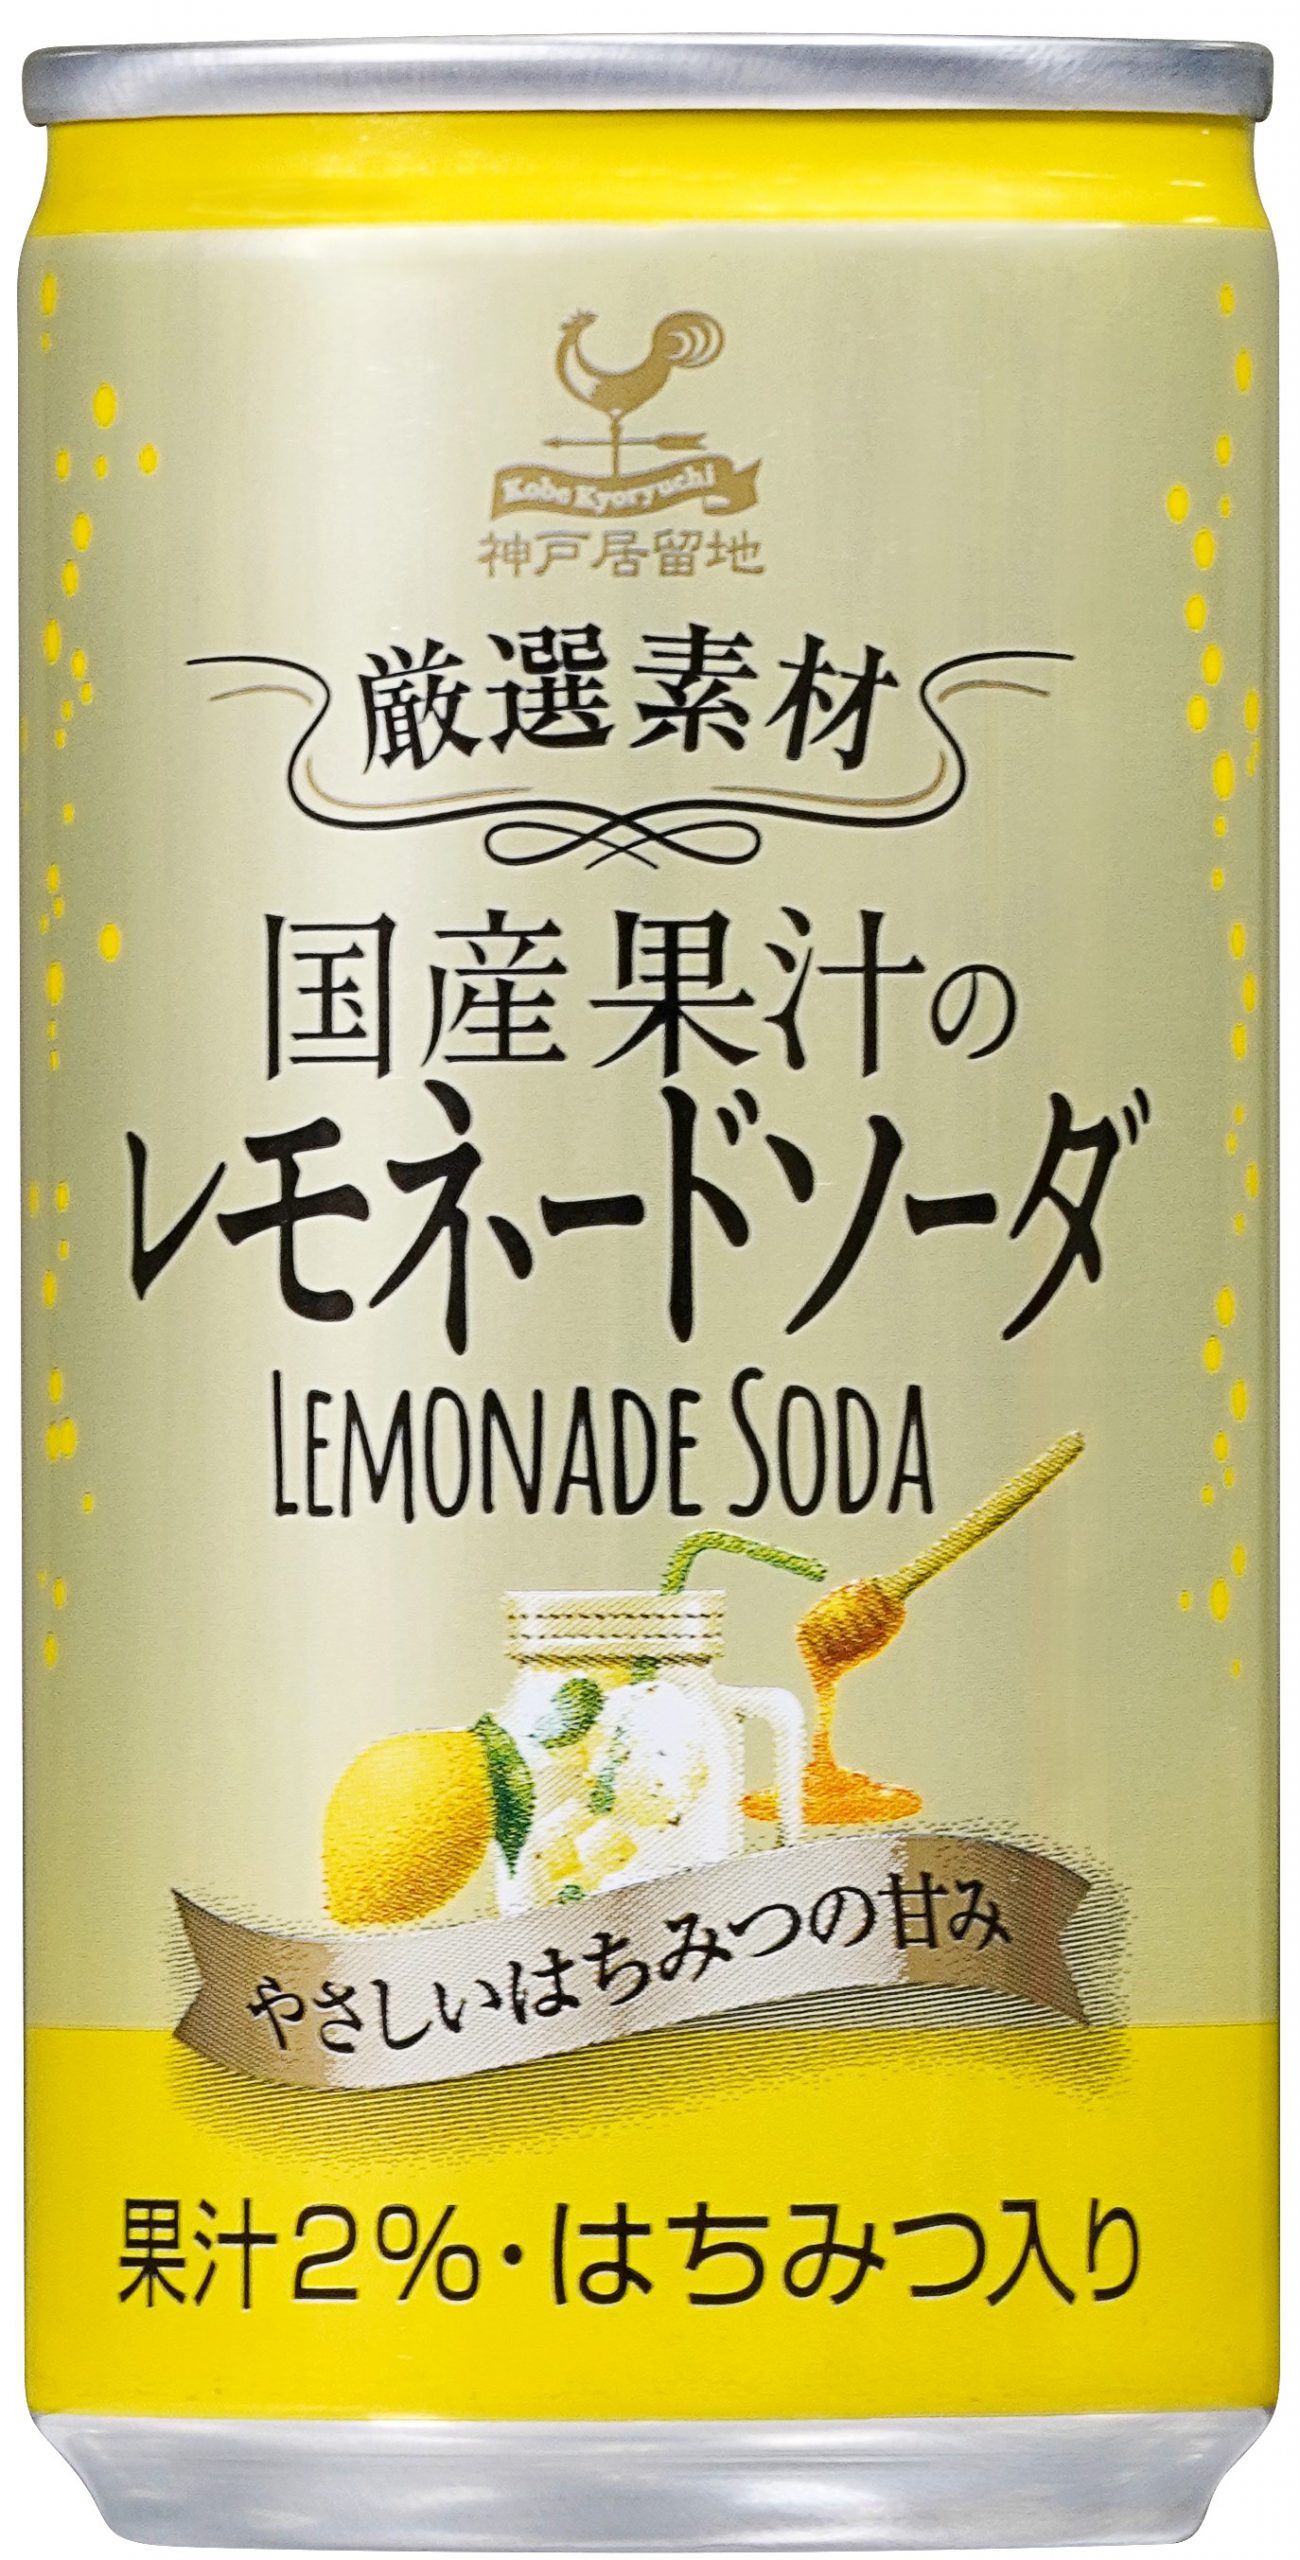 神戸居留地 厳選素材国産果汁のレモネードソーダ 185ml